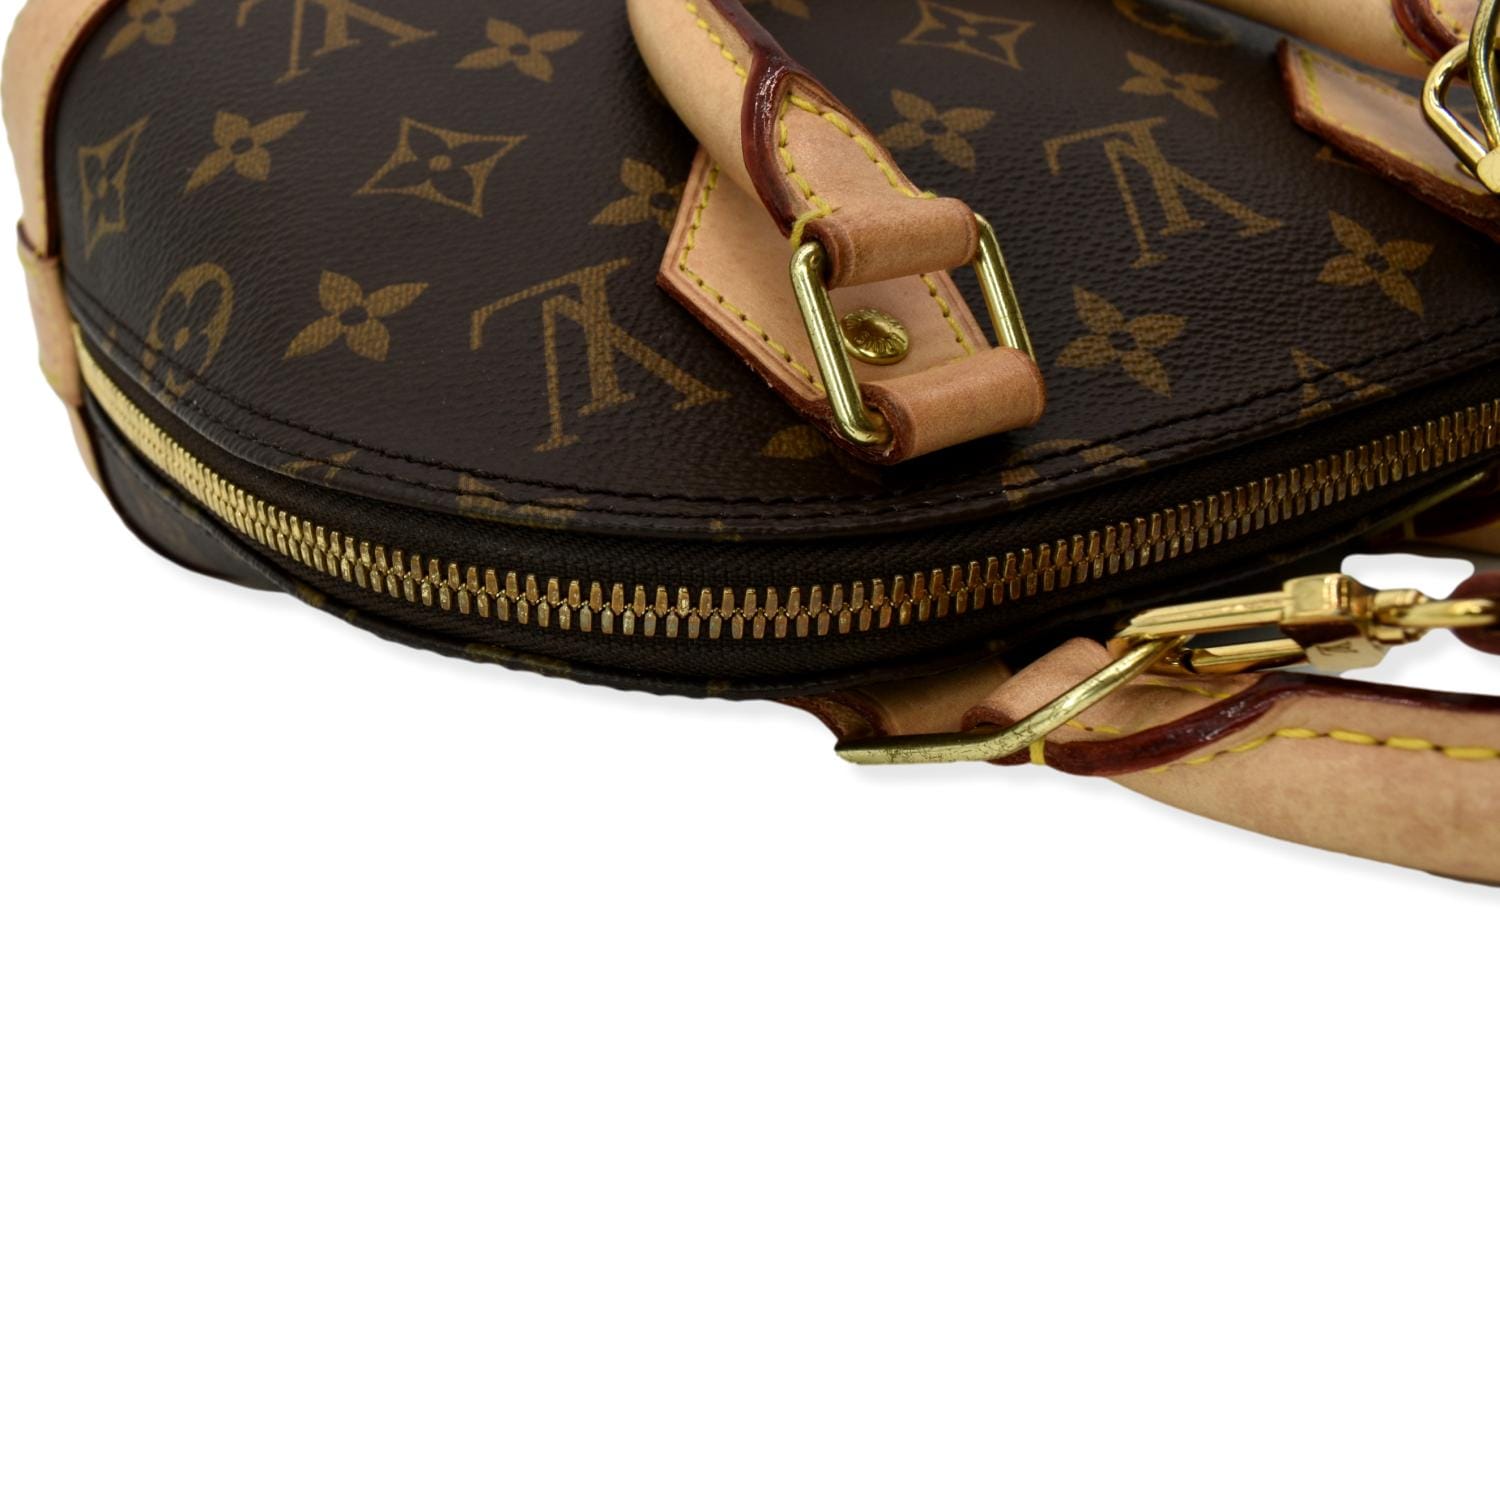 Louis Vuitton Alma BB Monogram Canvas Satchel Bag